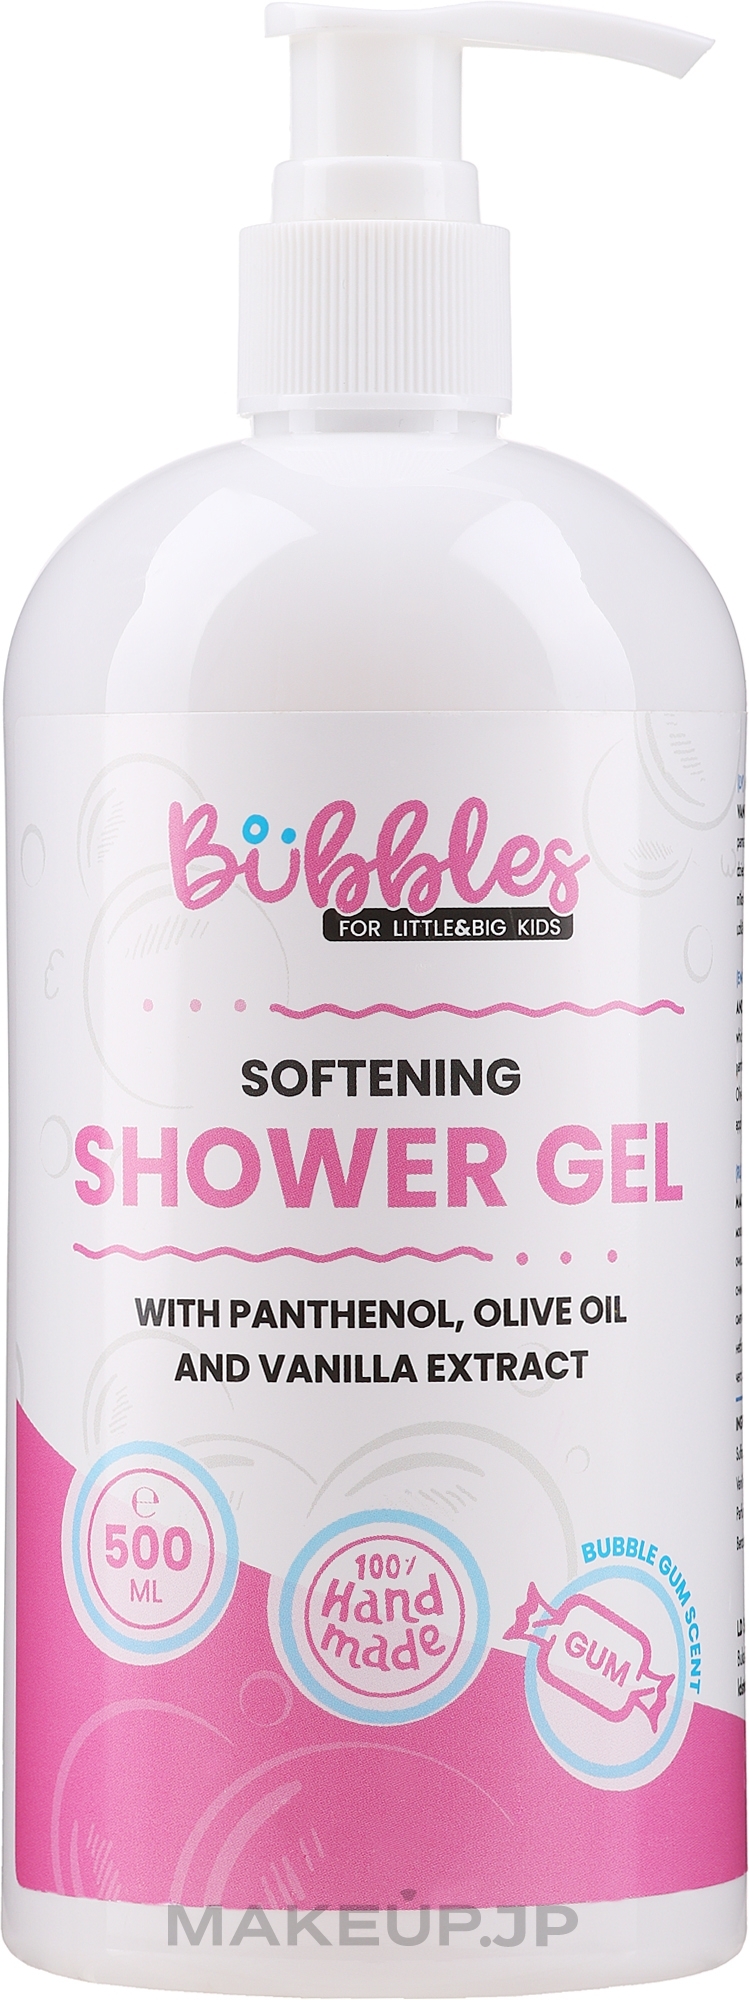 Softening Shower Gel - Bubbles Softening Shower Gel — photo 500 ml